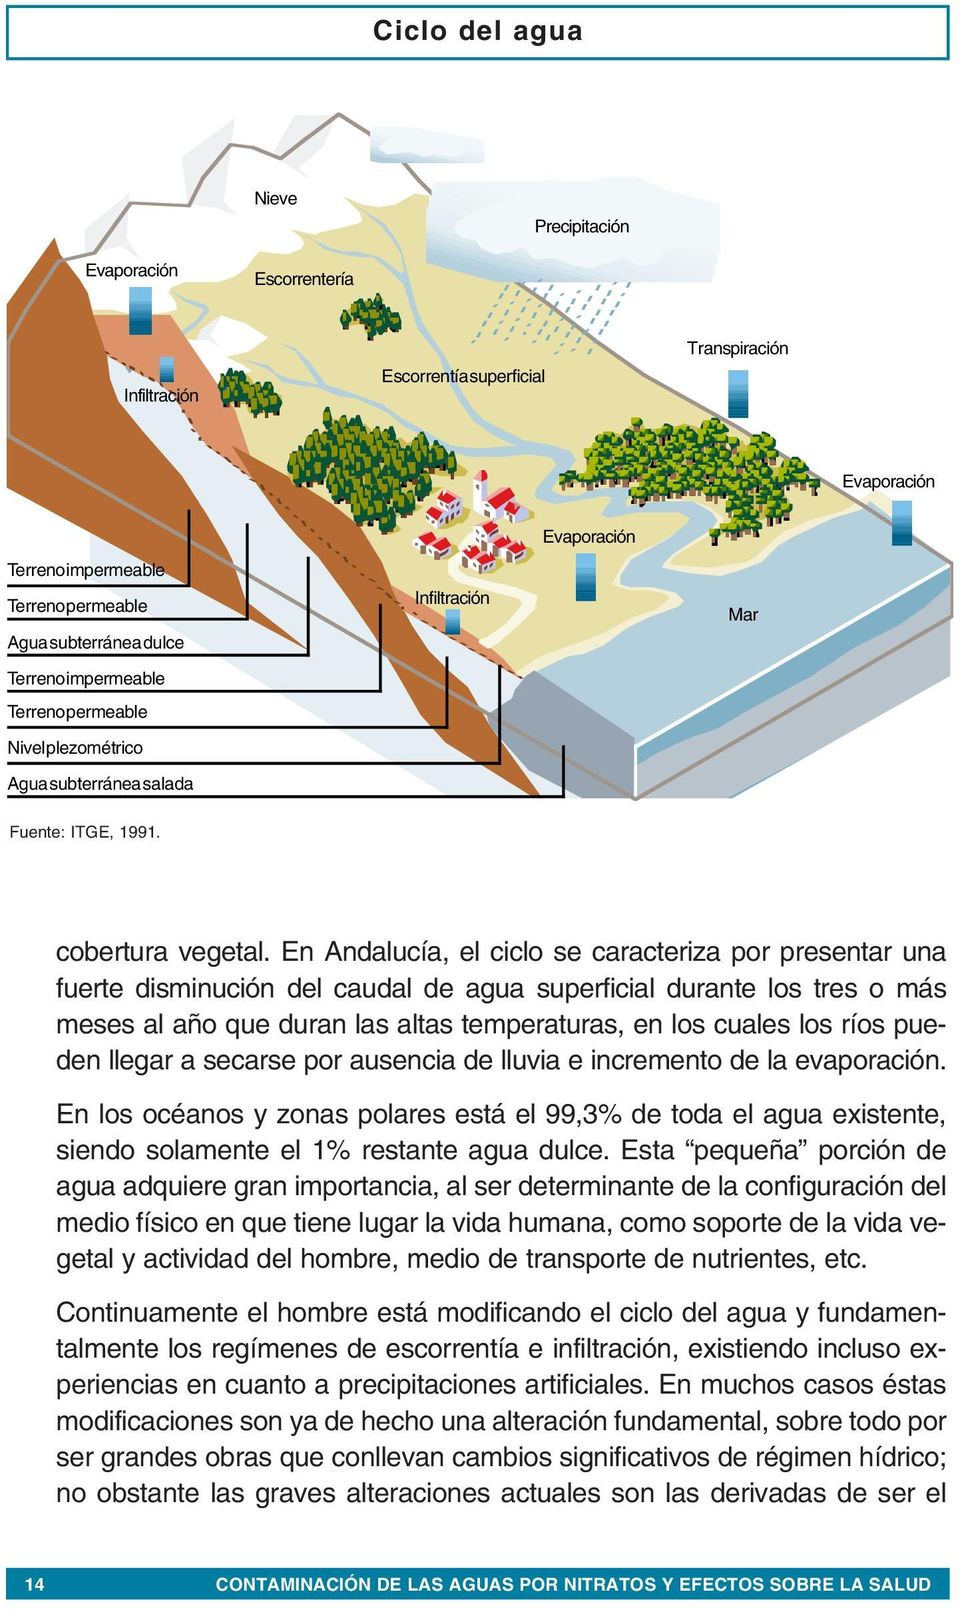 En Andalucía, el ciclo se caracteriza por presentar una fuerte disminución del caudal de agua superficial durante los tres o más meses al año que duran las altas temperaturas, en los cuales los ríos